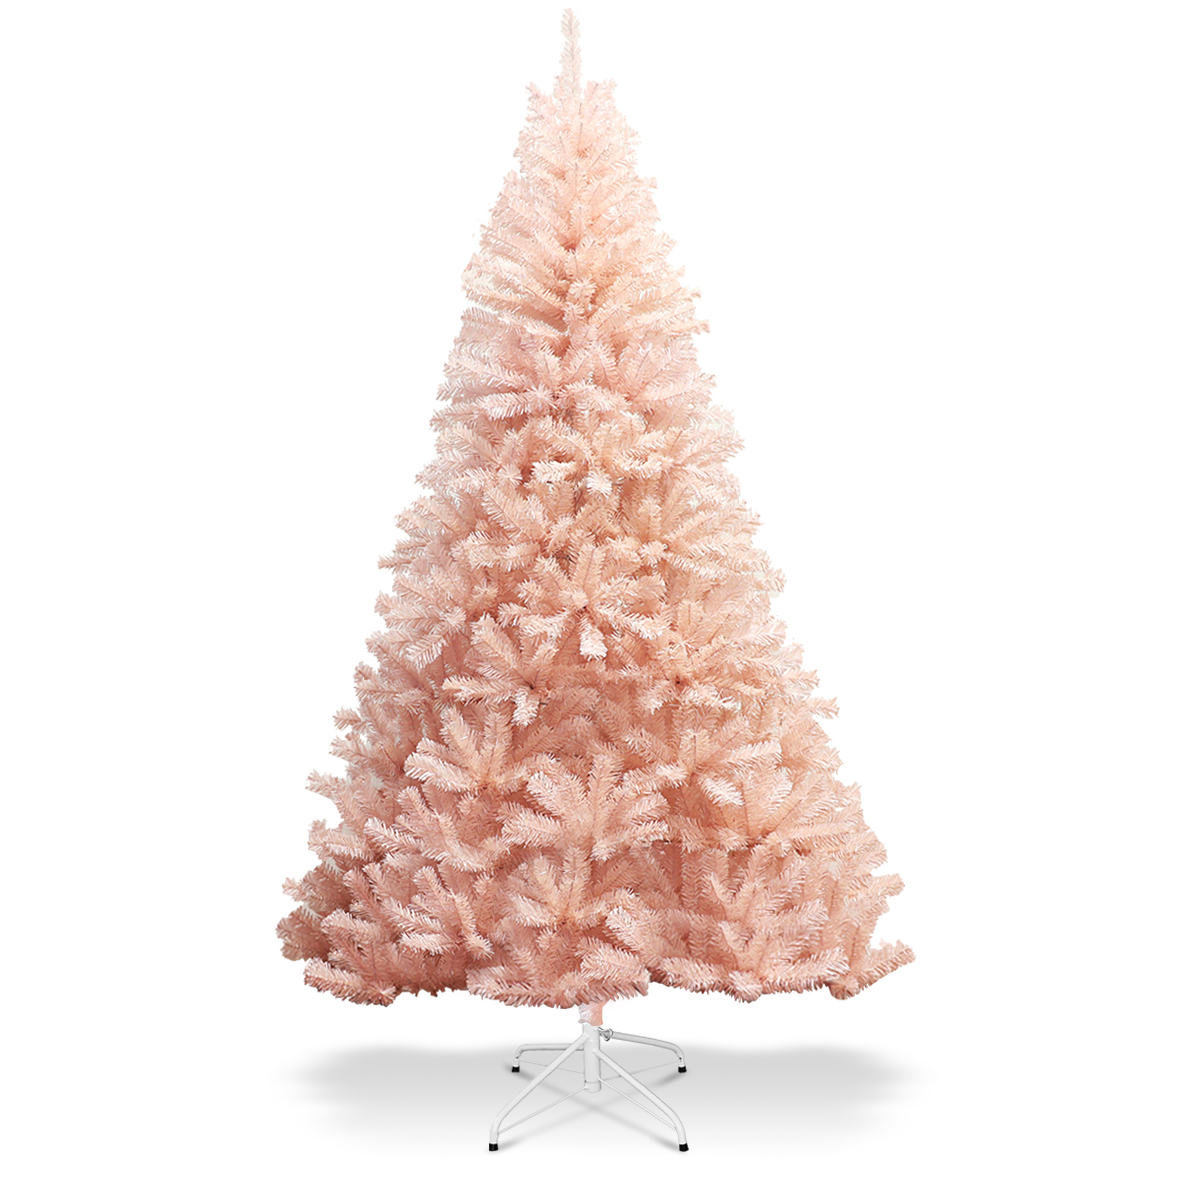 Costway 6ft Pink Christmas Tree Hinged Full Fir Tree Metal Metal Season,Pink - image 1 of 8